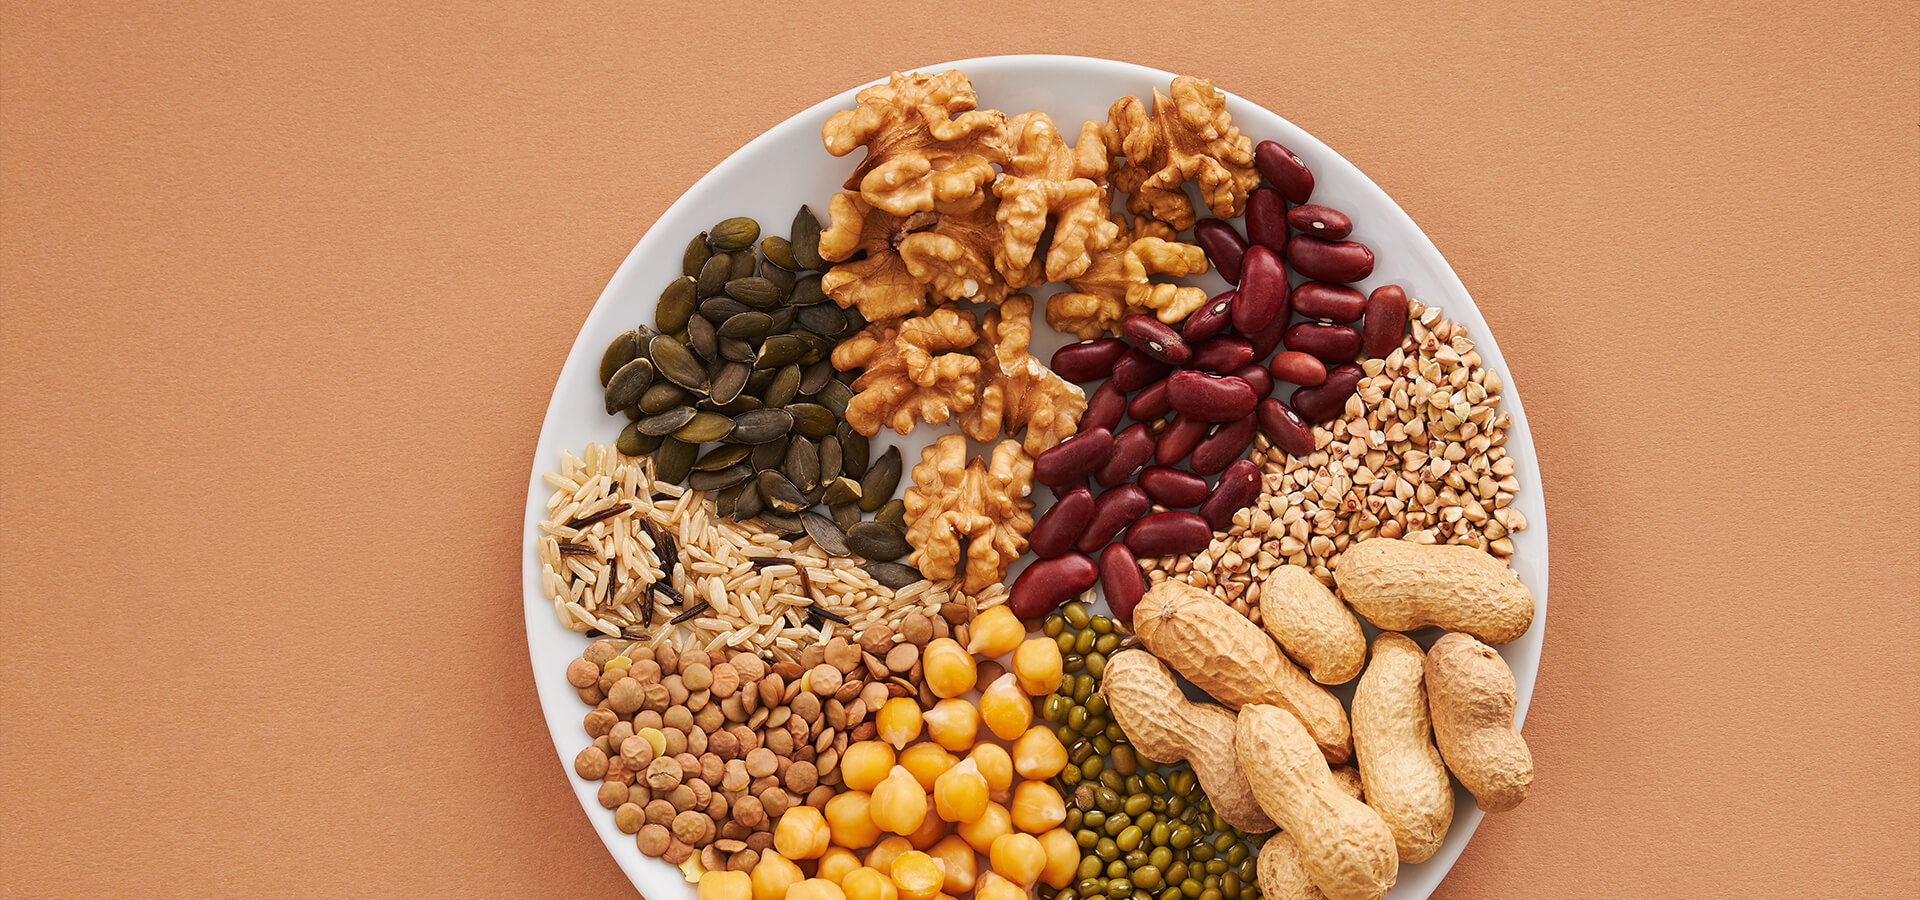 Nüsse und Hülsenfrüchte als gesunde Proteinquelle